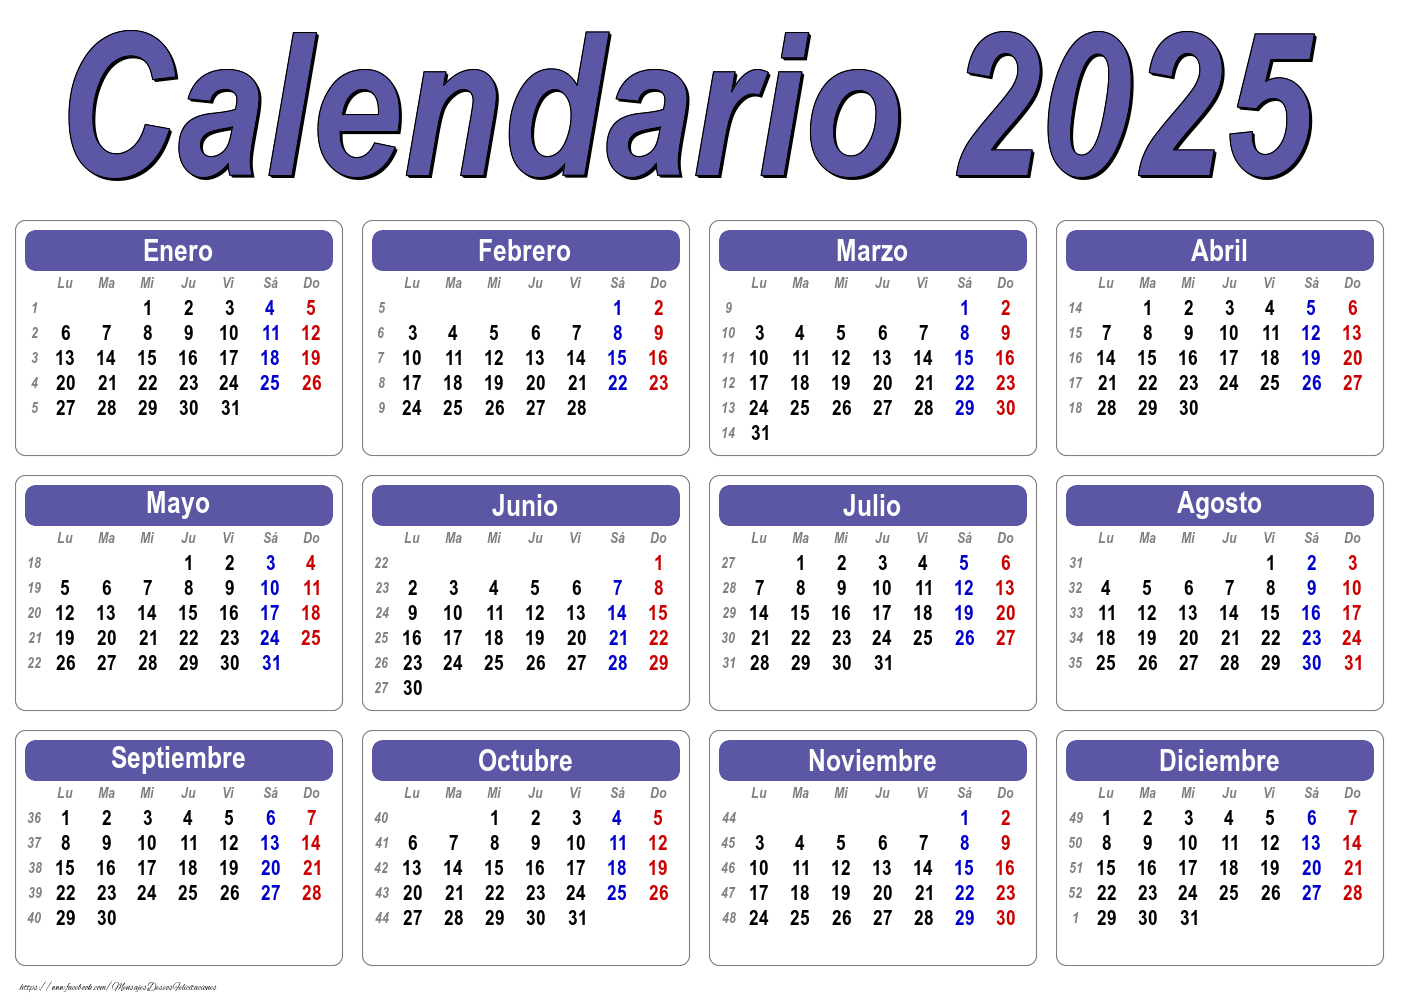 Felicitaciones calendarios - Calendario 2025 - Clásico - Modelo 001 - mensajesdeseosfelicitaciones.com